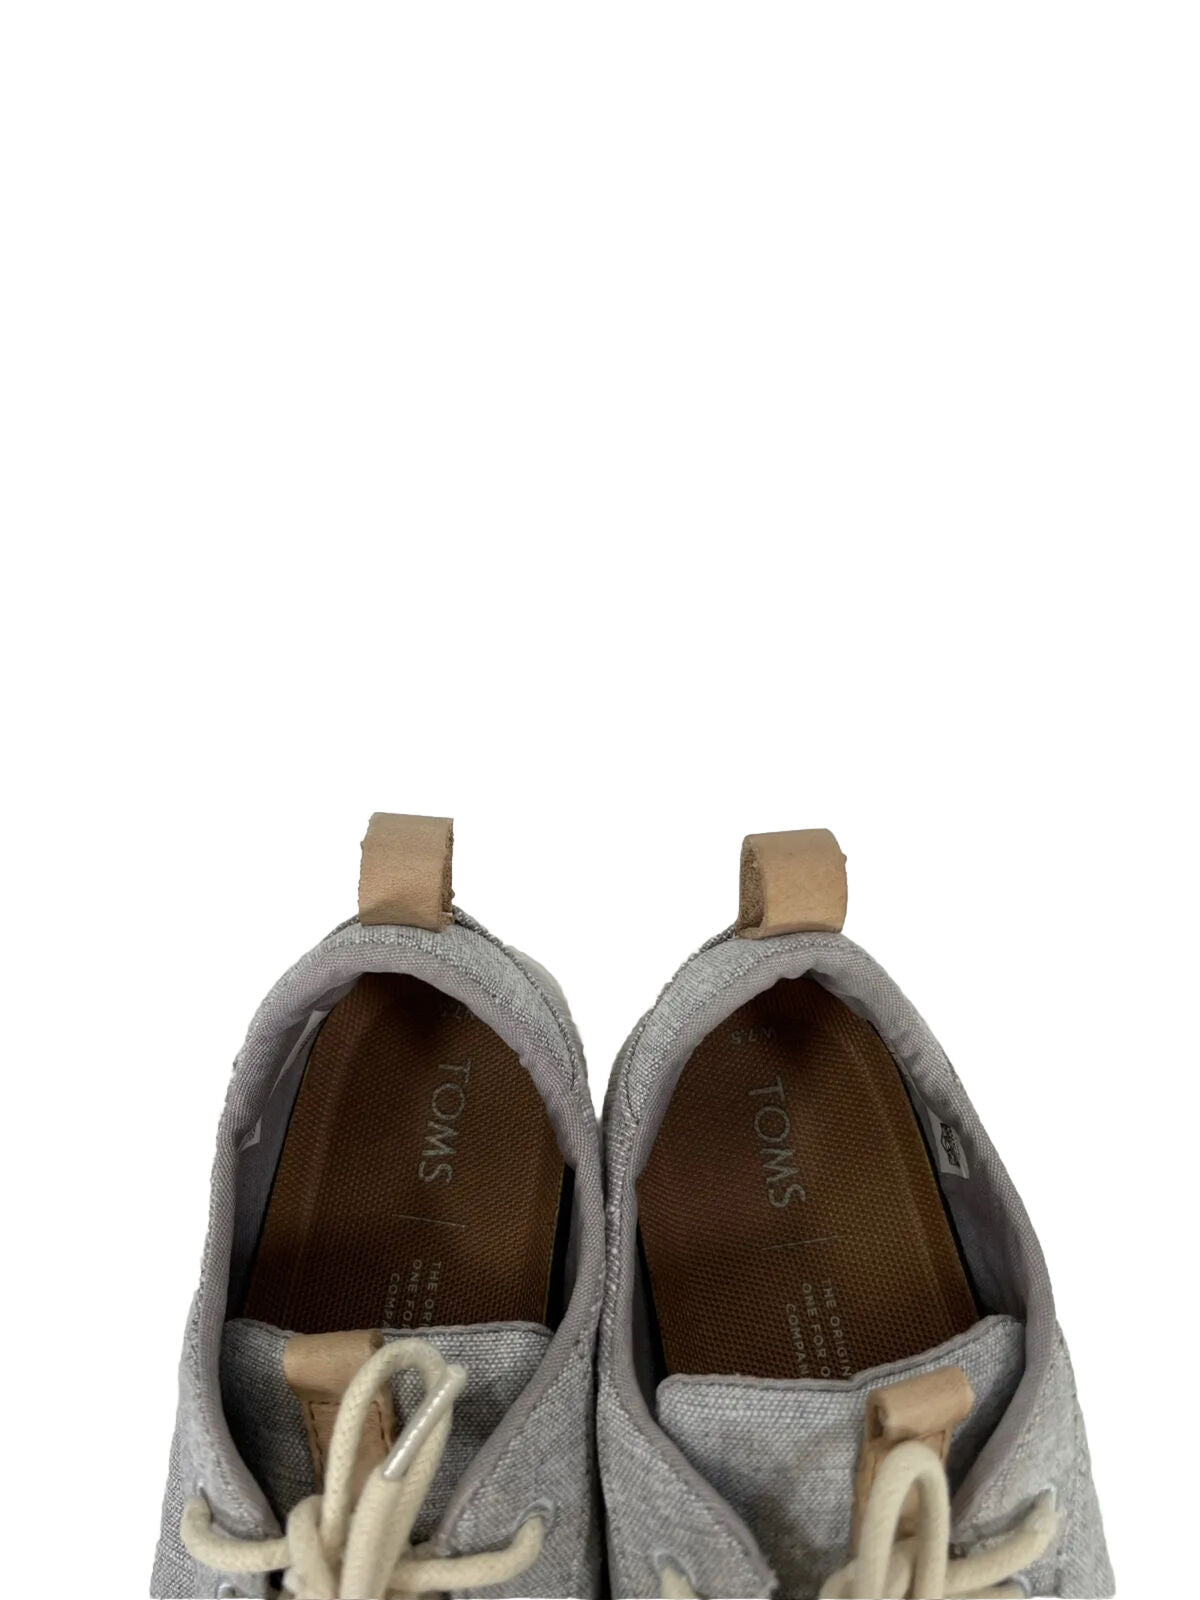 Toms Zapatillas casuales con cordones Cabrillo Chambray gris para mujer - 7.5